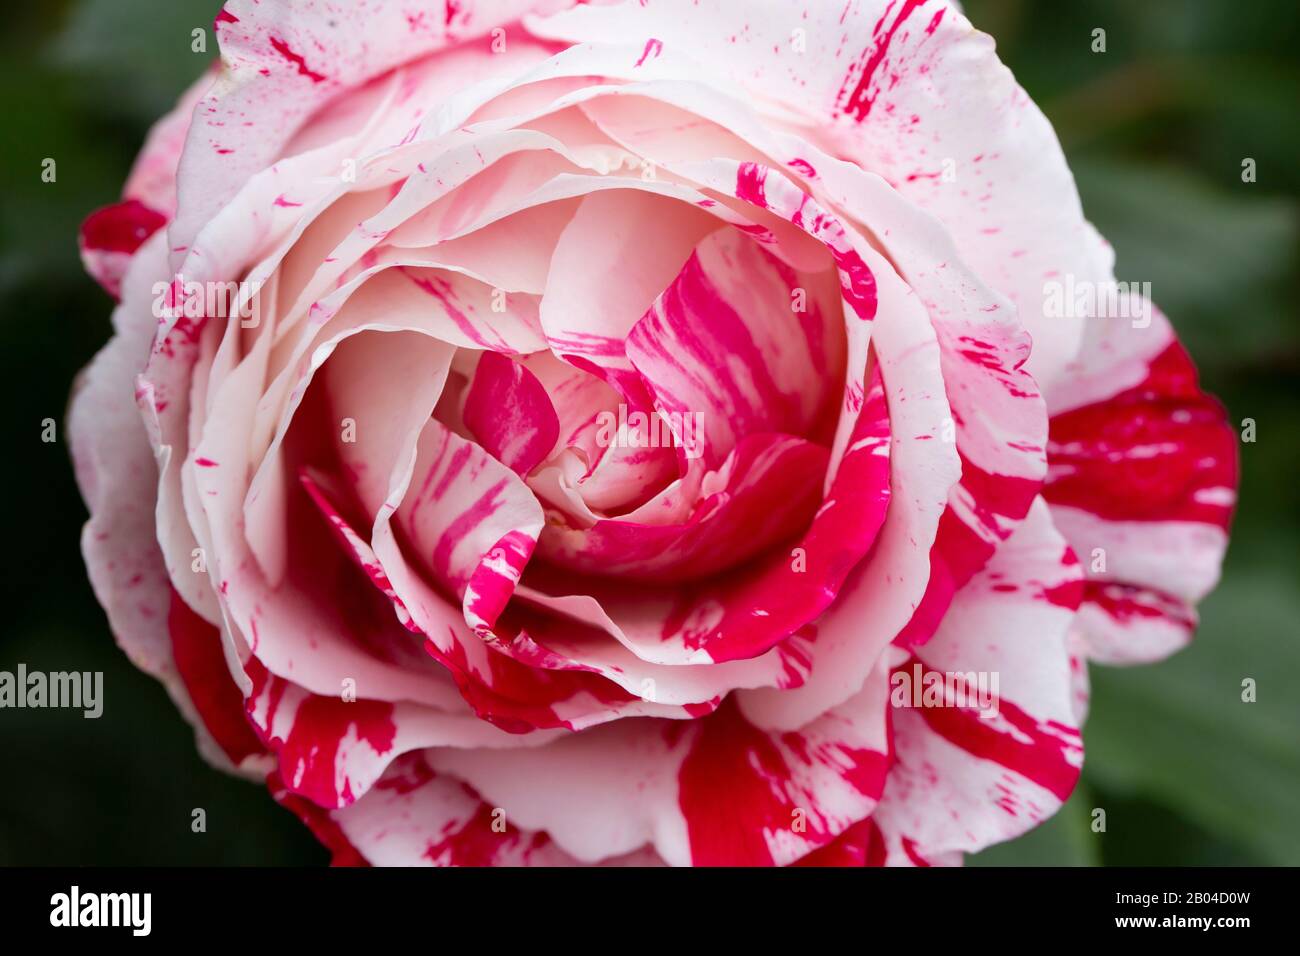 les détails magnifiques d'une rose rouge et blanche en fleur Banque D'Images